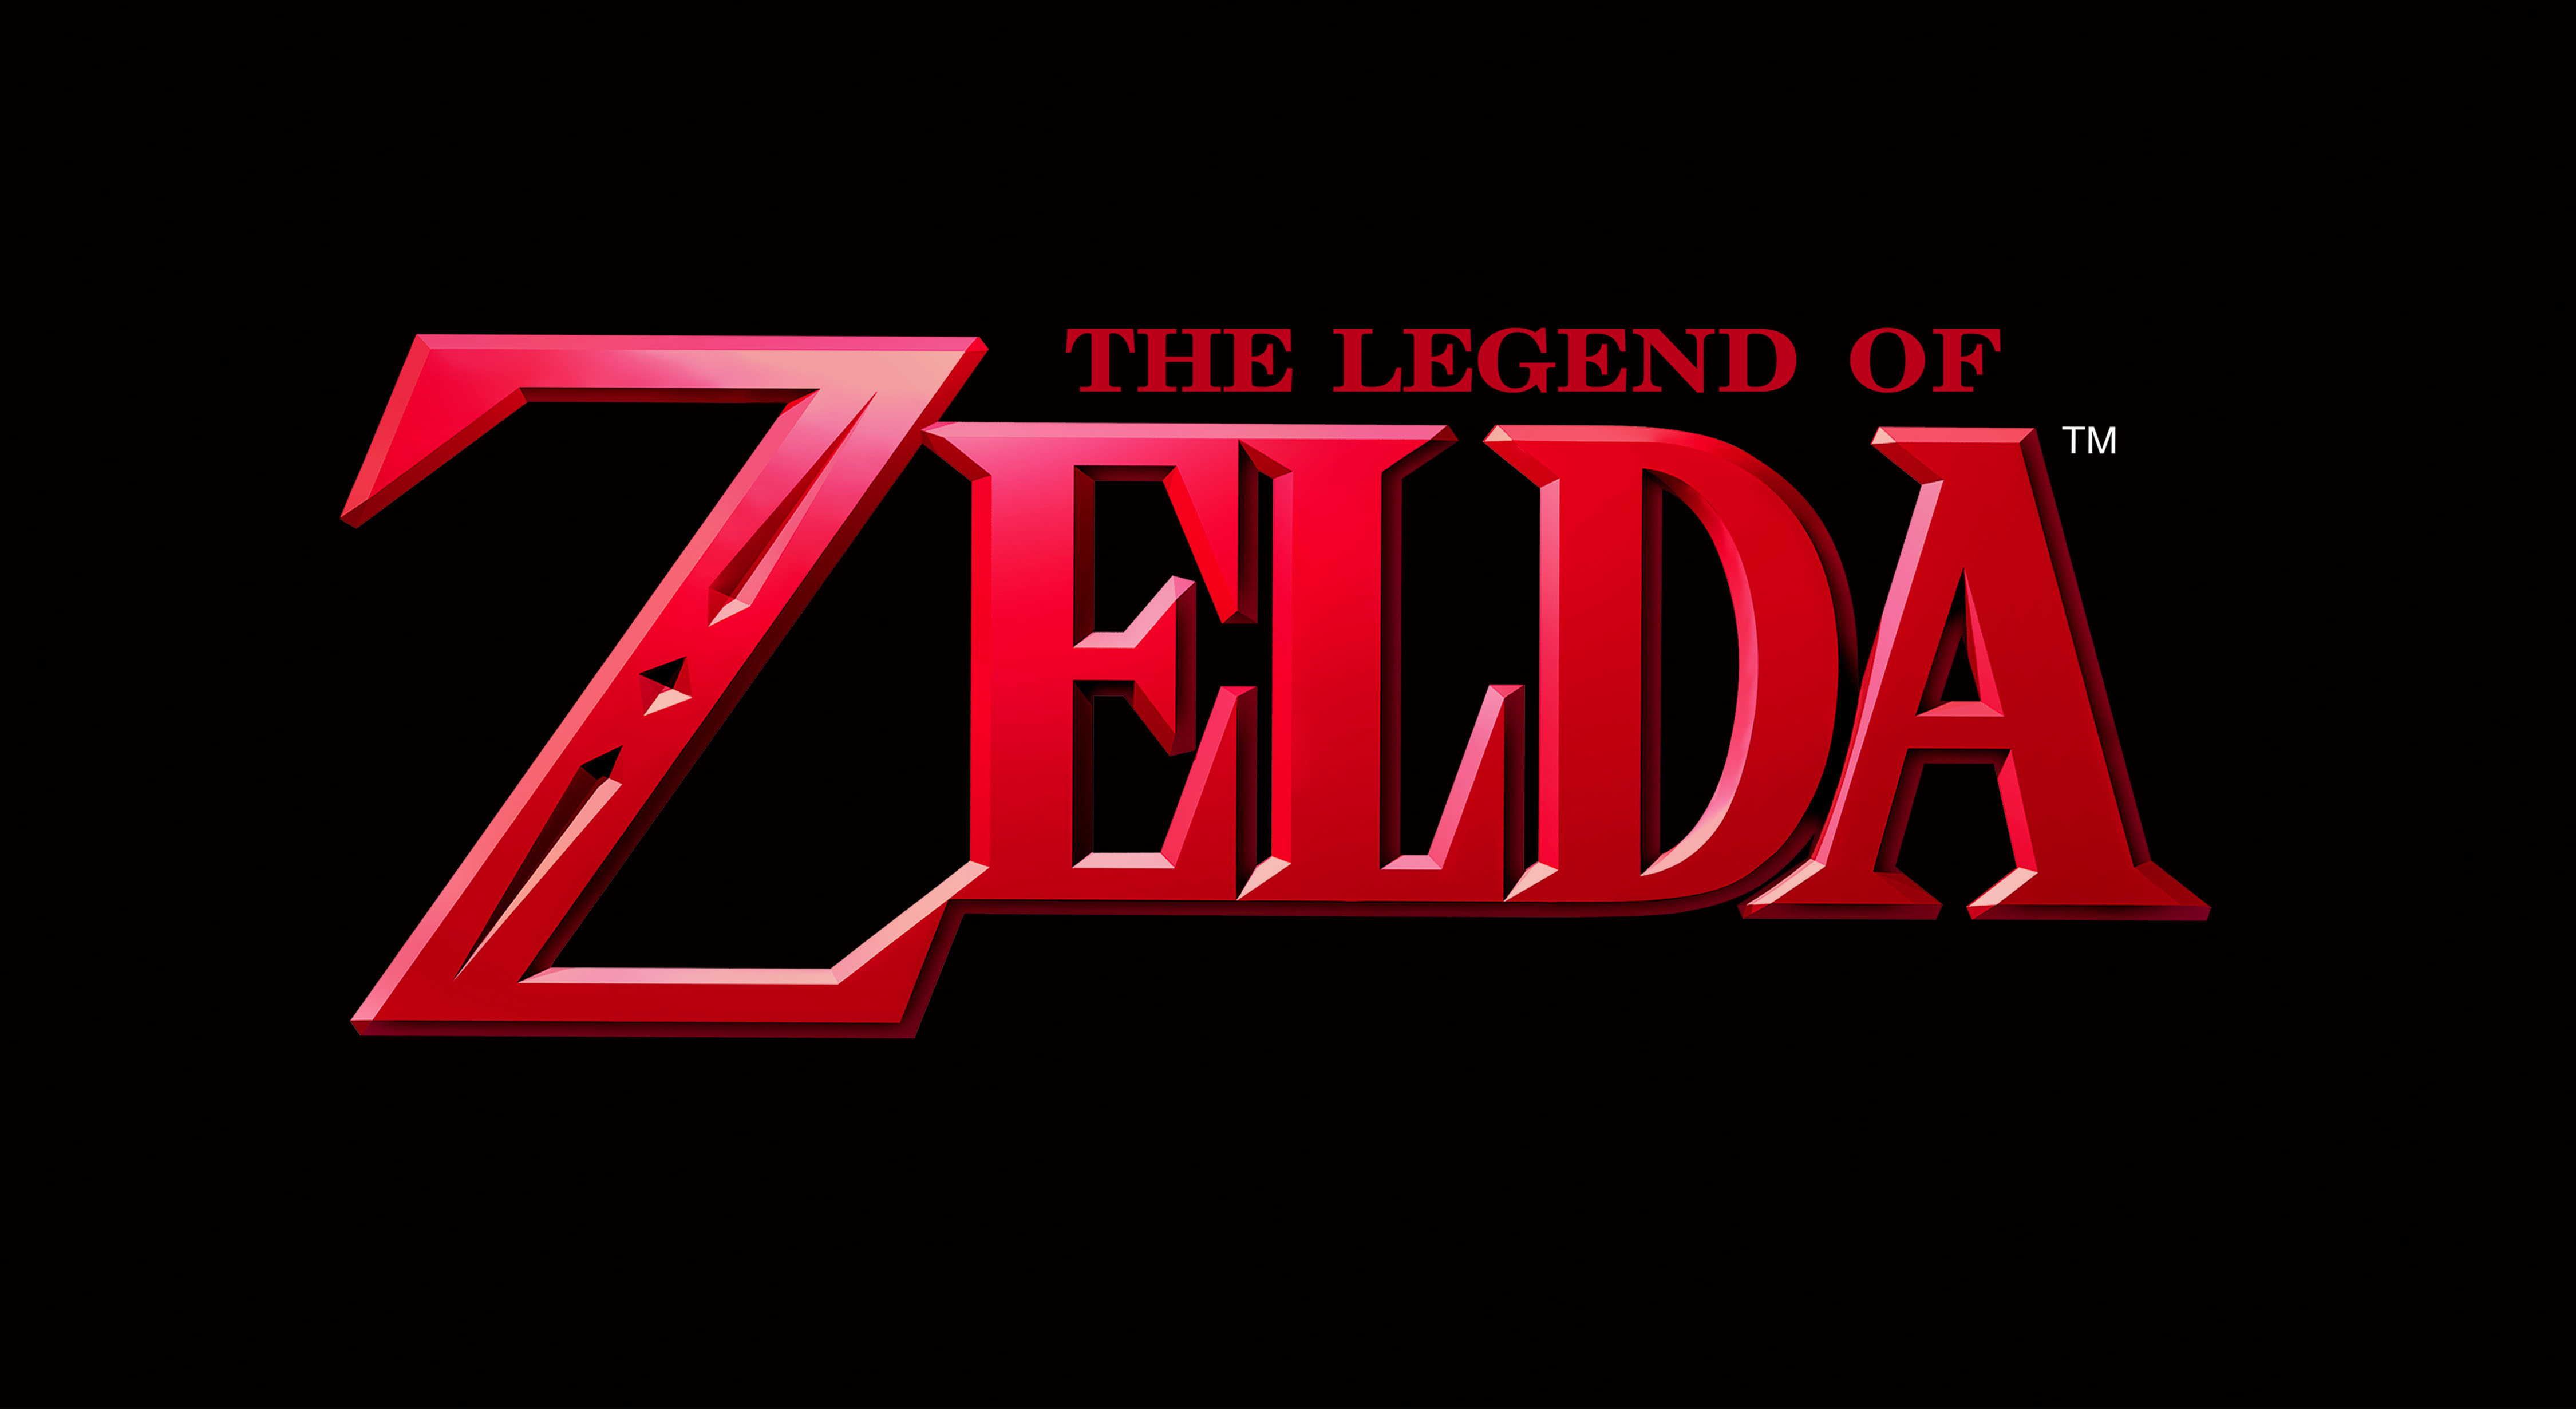 The_Legend_of_Zelda_series_logo.jpg